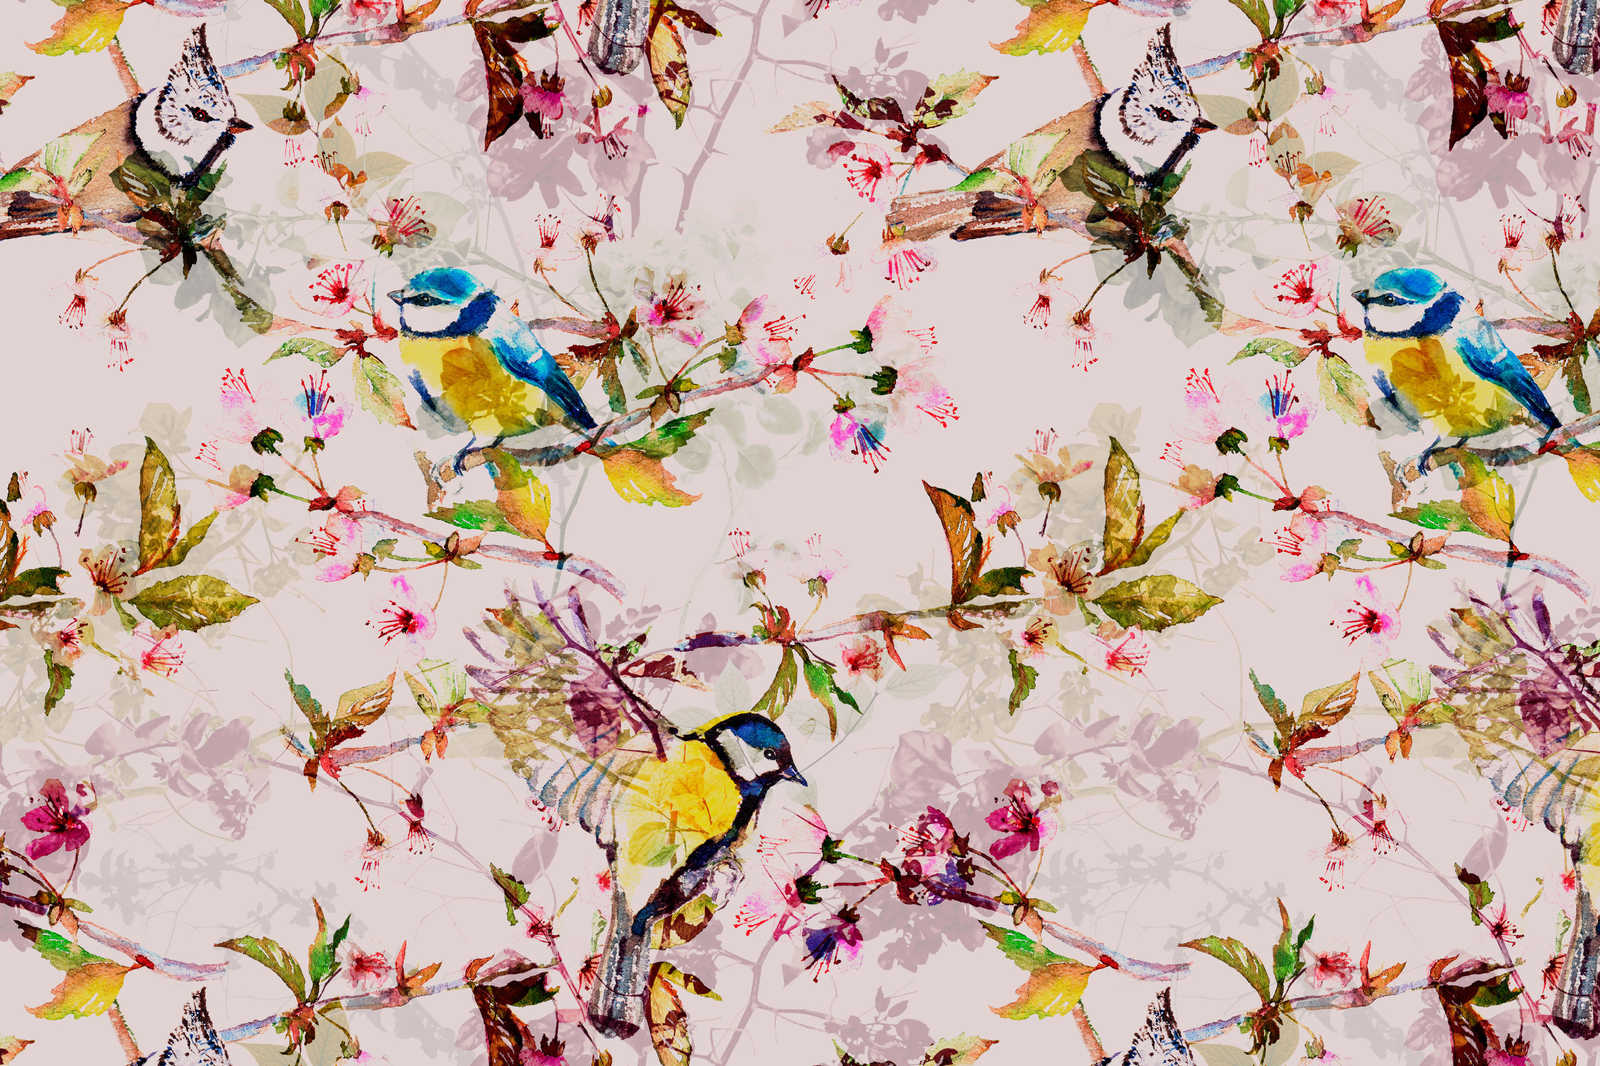             Pittura su tela in stile collage di uccelli - 0,90 m x 0,60 m
        